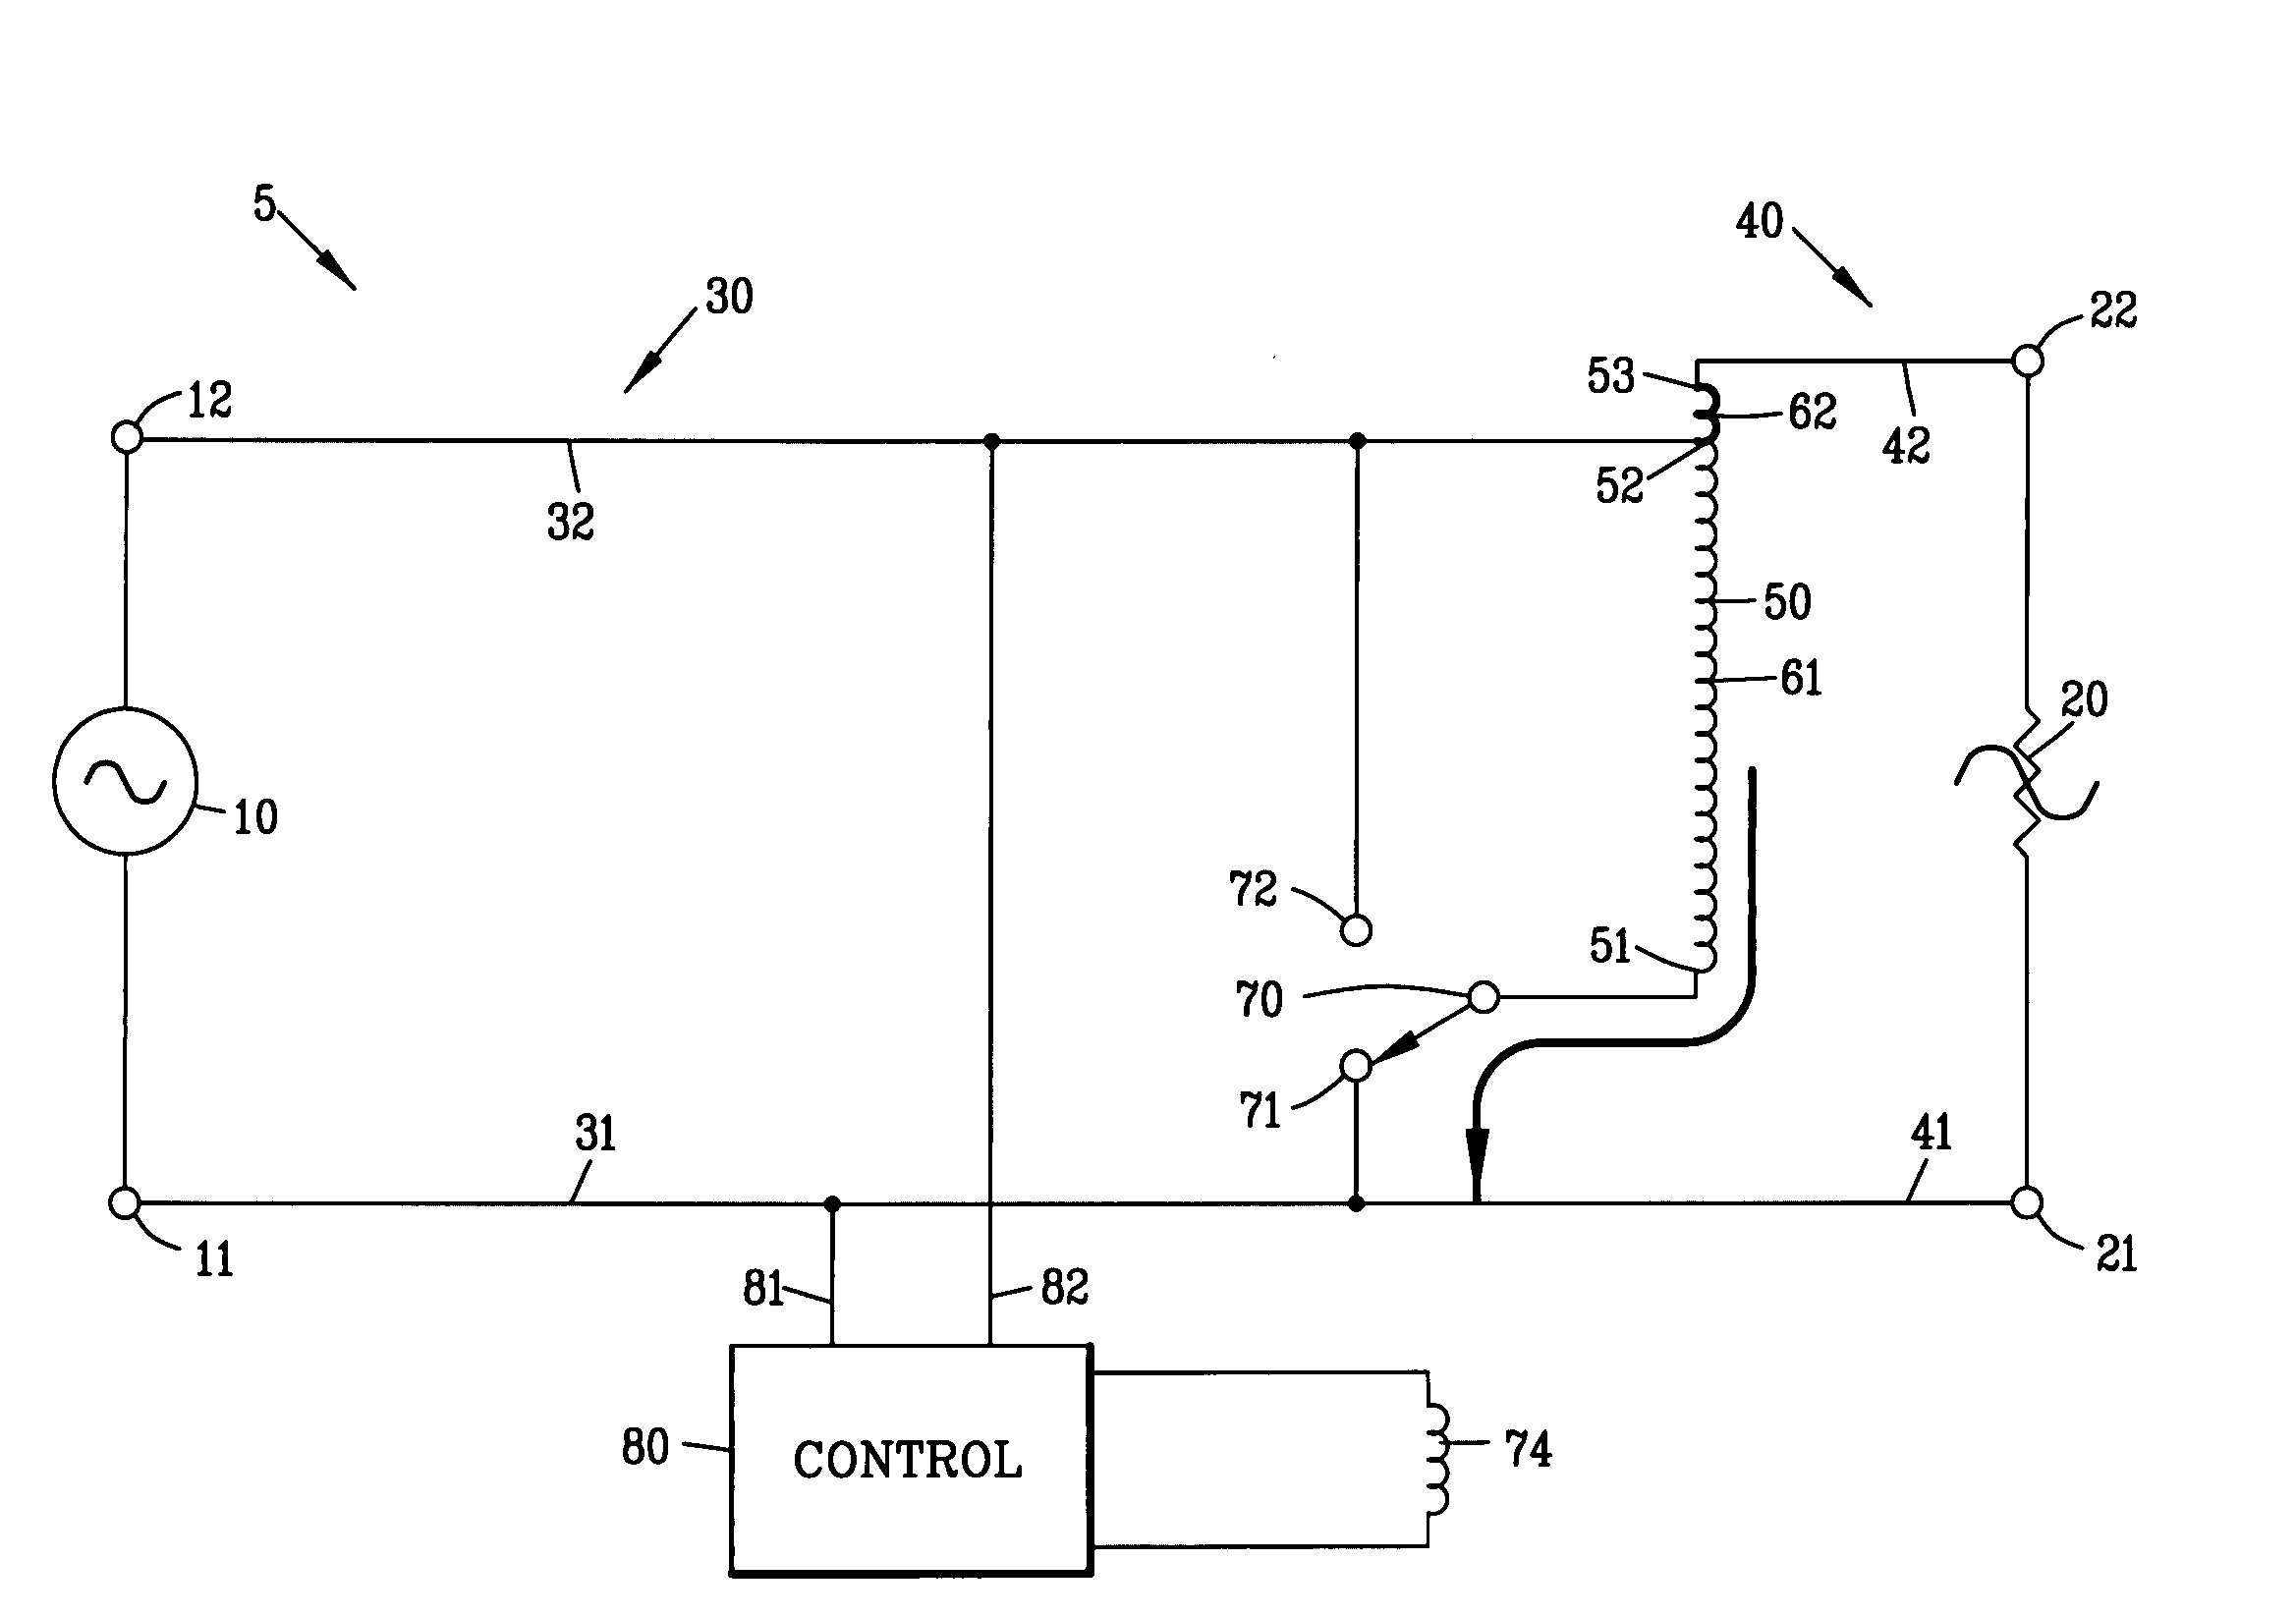 Voltage compensation circuit